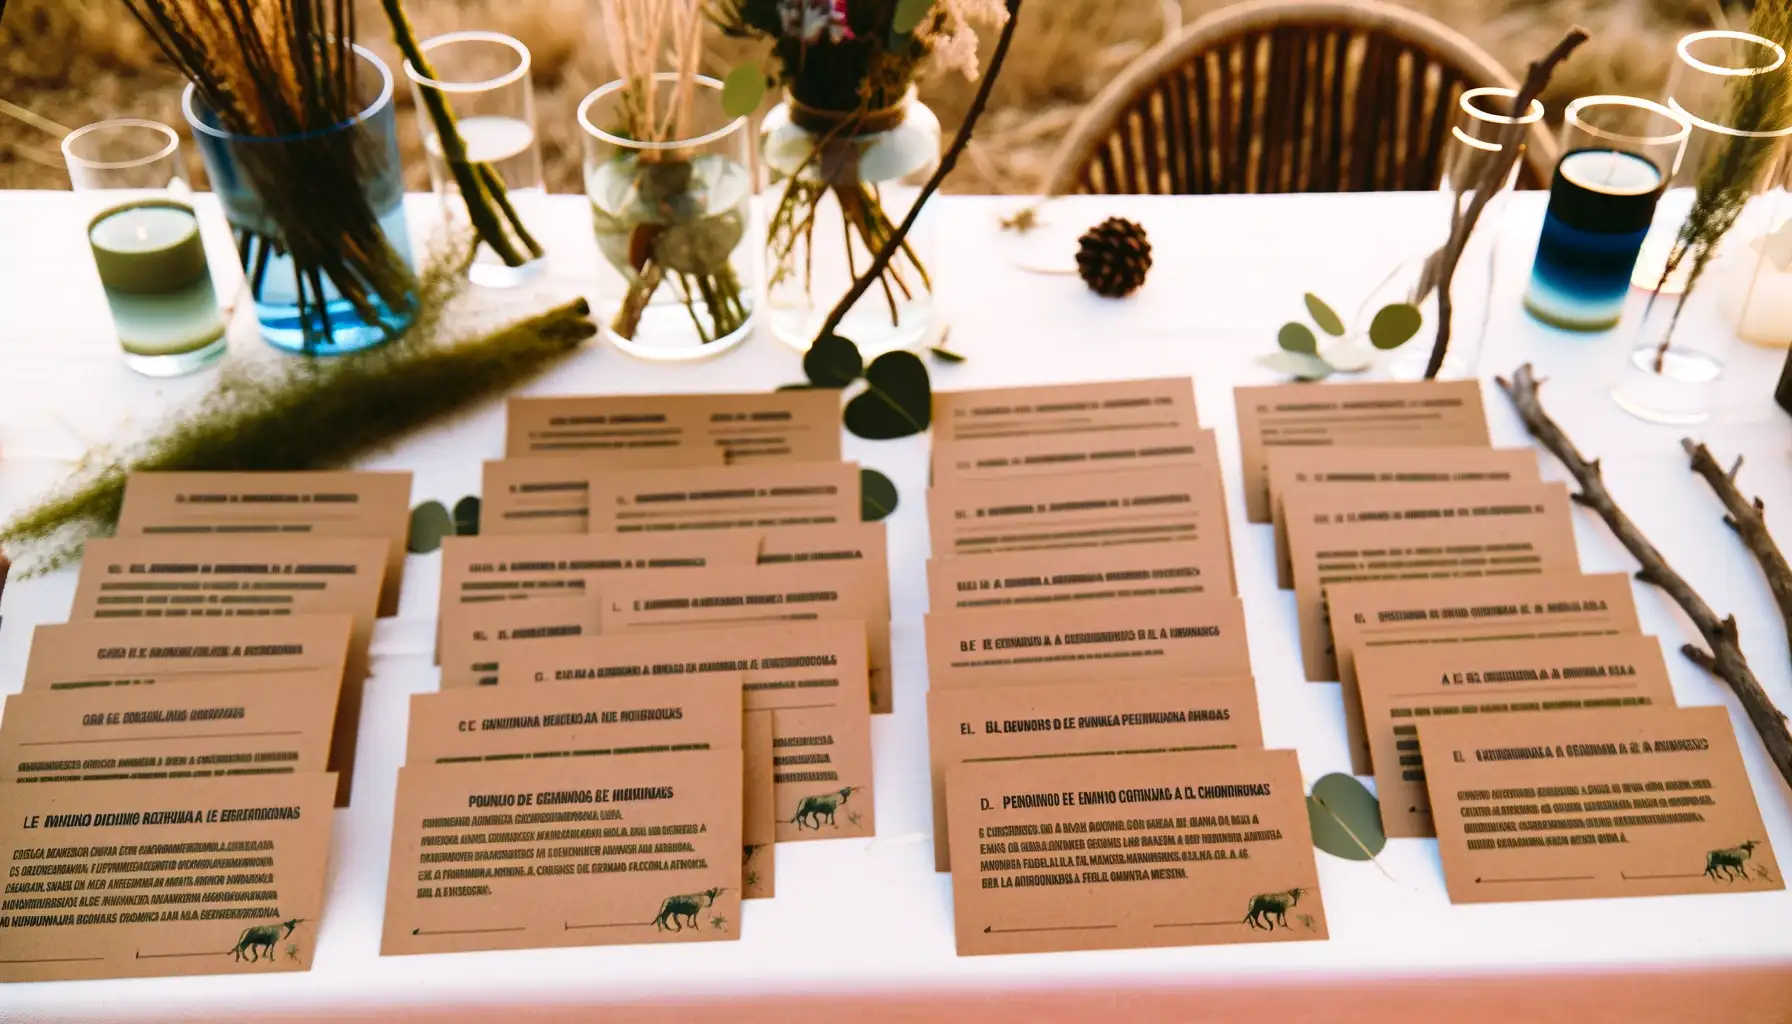 Mejor Una imagen horizontal que ilustre la idea de regalos solidarios en una boda con un enfoque en la sostenibilidad y el impacto social